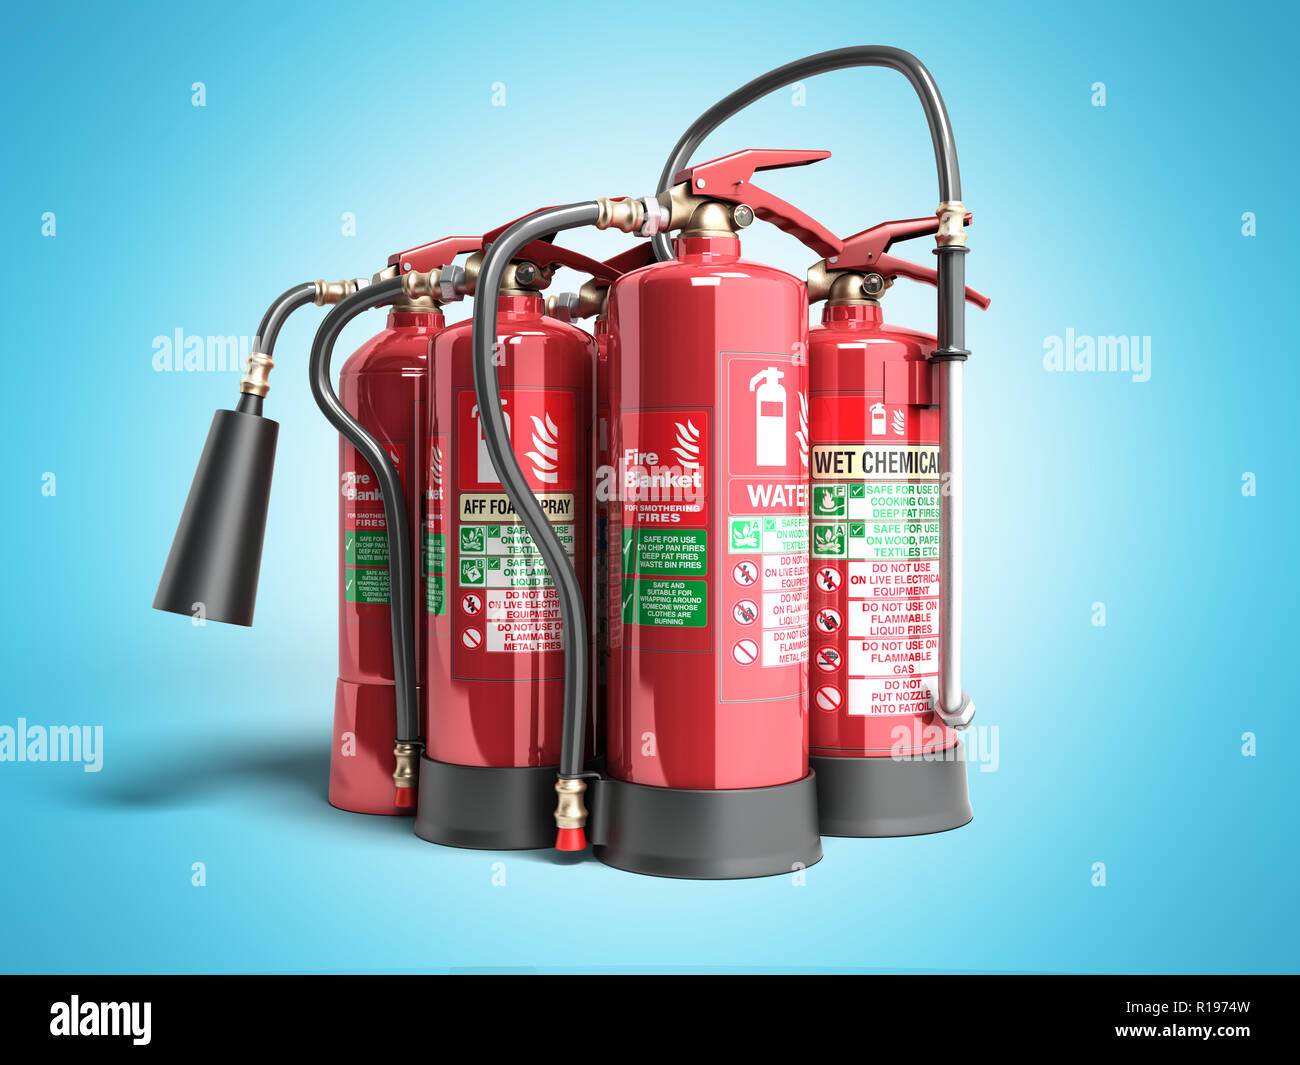 Fire Extinguisher Types Stockfotos und -bilder Kaufen - Alamy